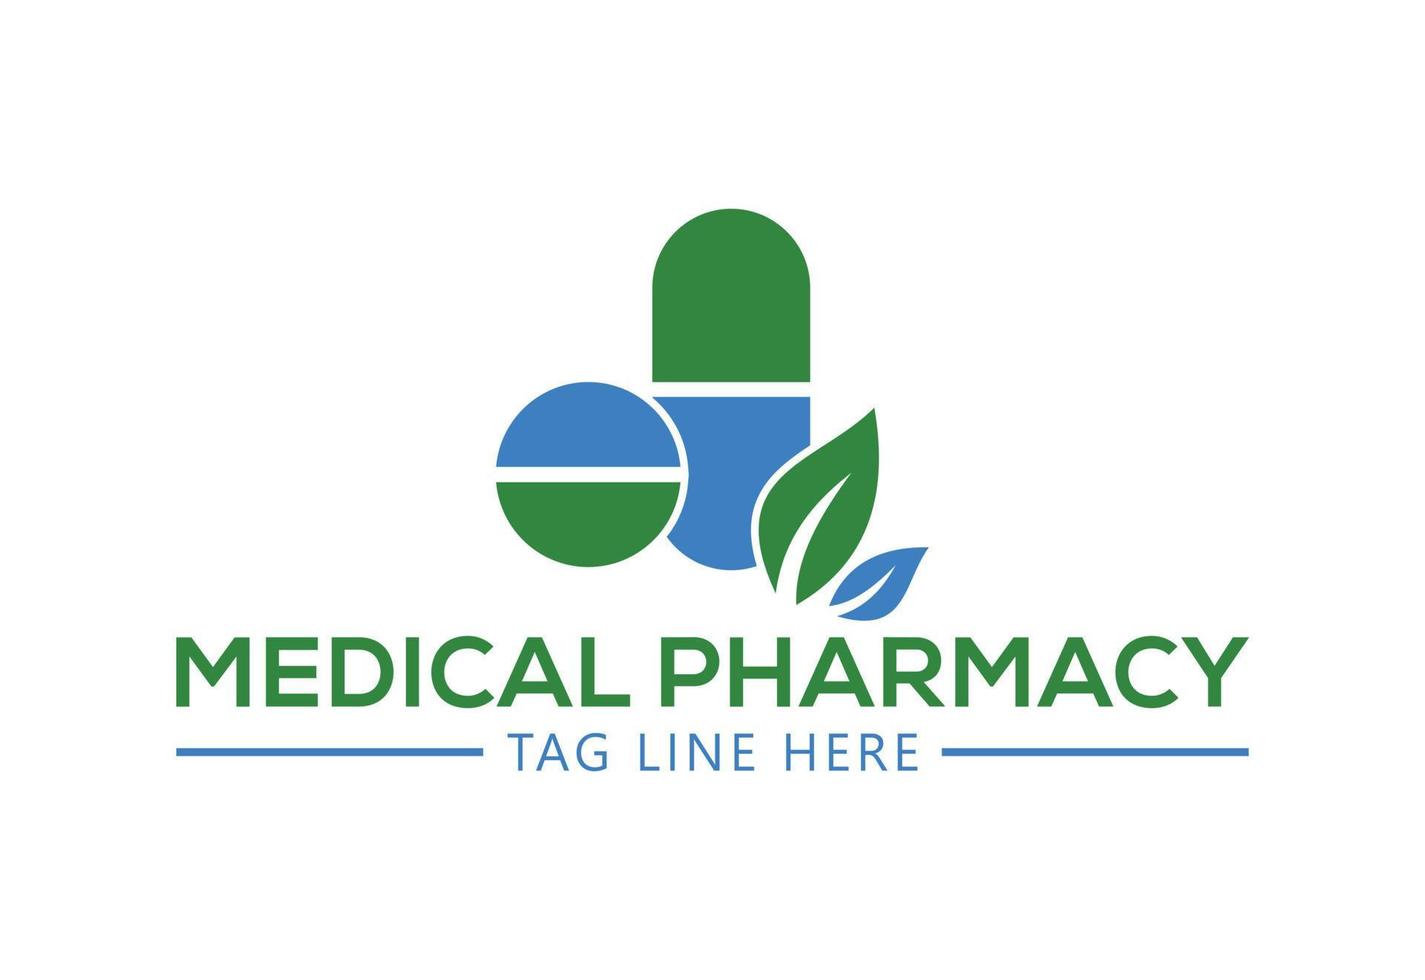 Creative Medical pharmacy logo design, Vector design concept